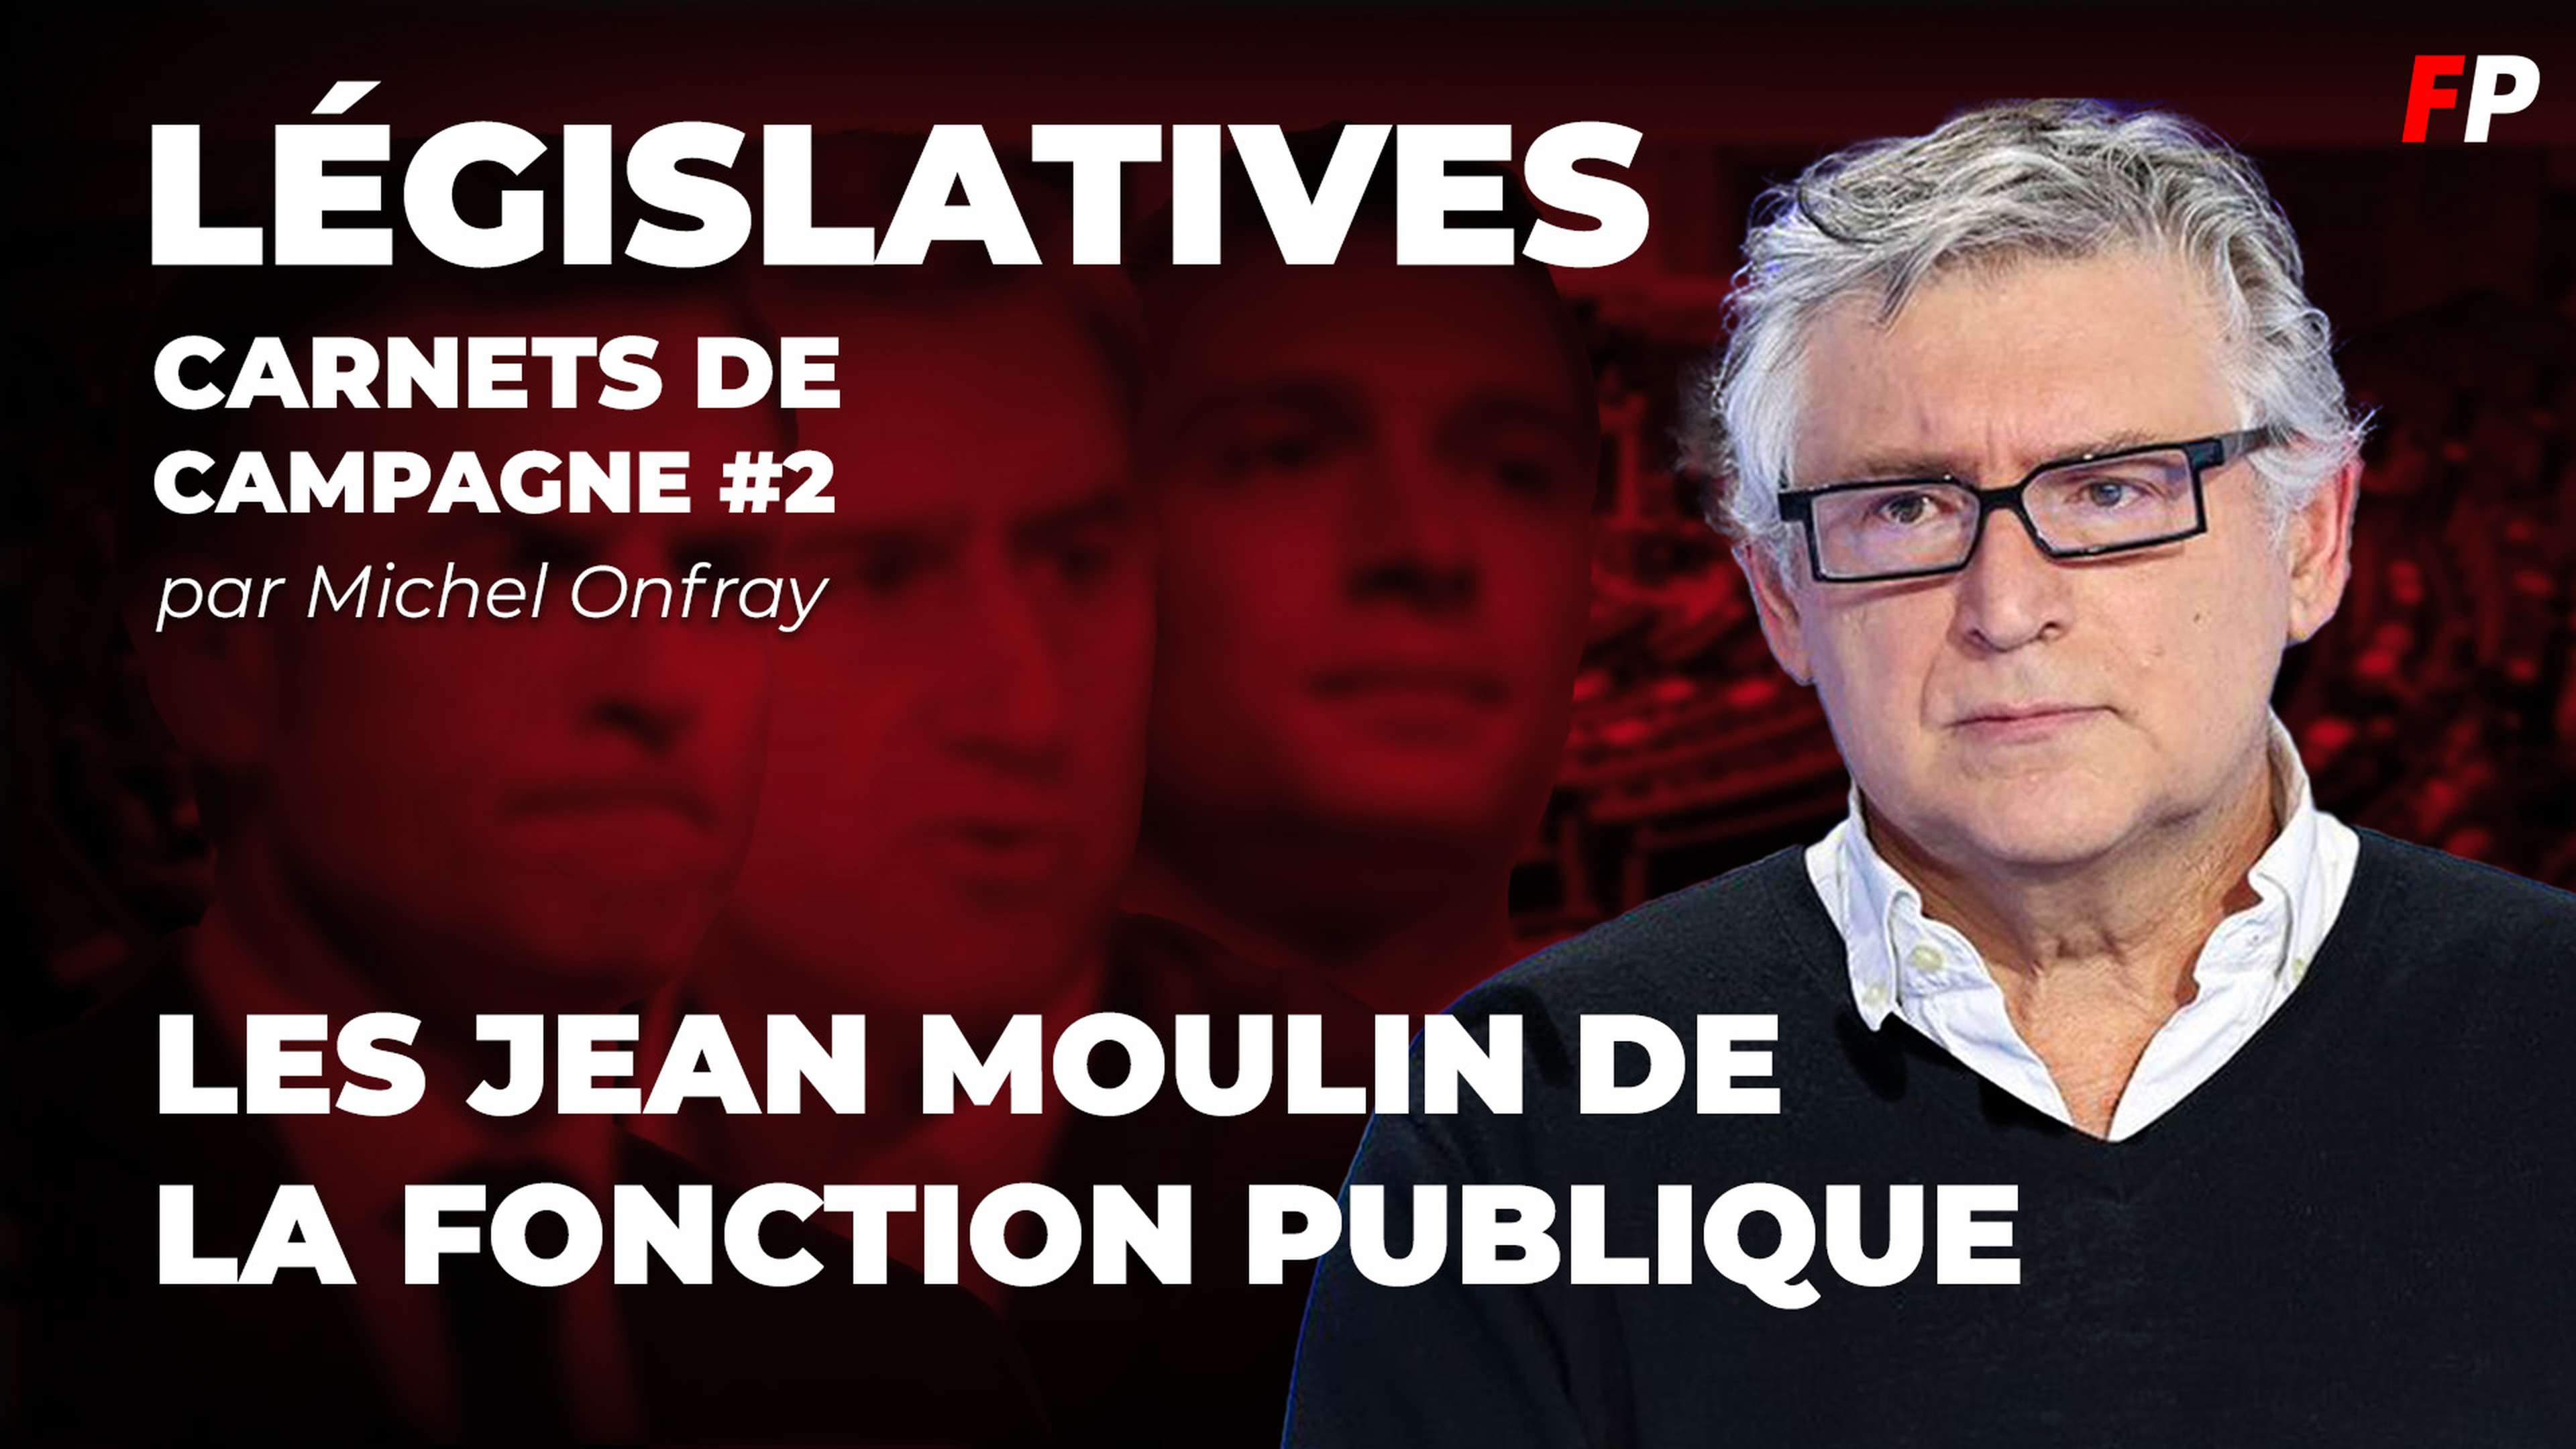 Législatives, le carnet de campagne de Michel Onfray (épisode 2) : les "Jean Moulin" de la fonction publique